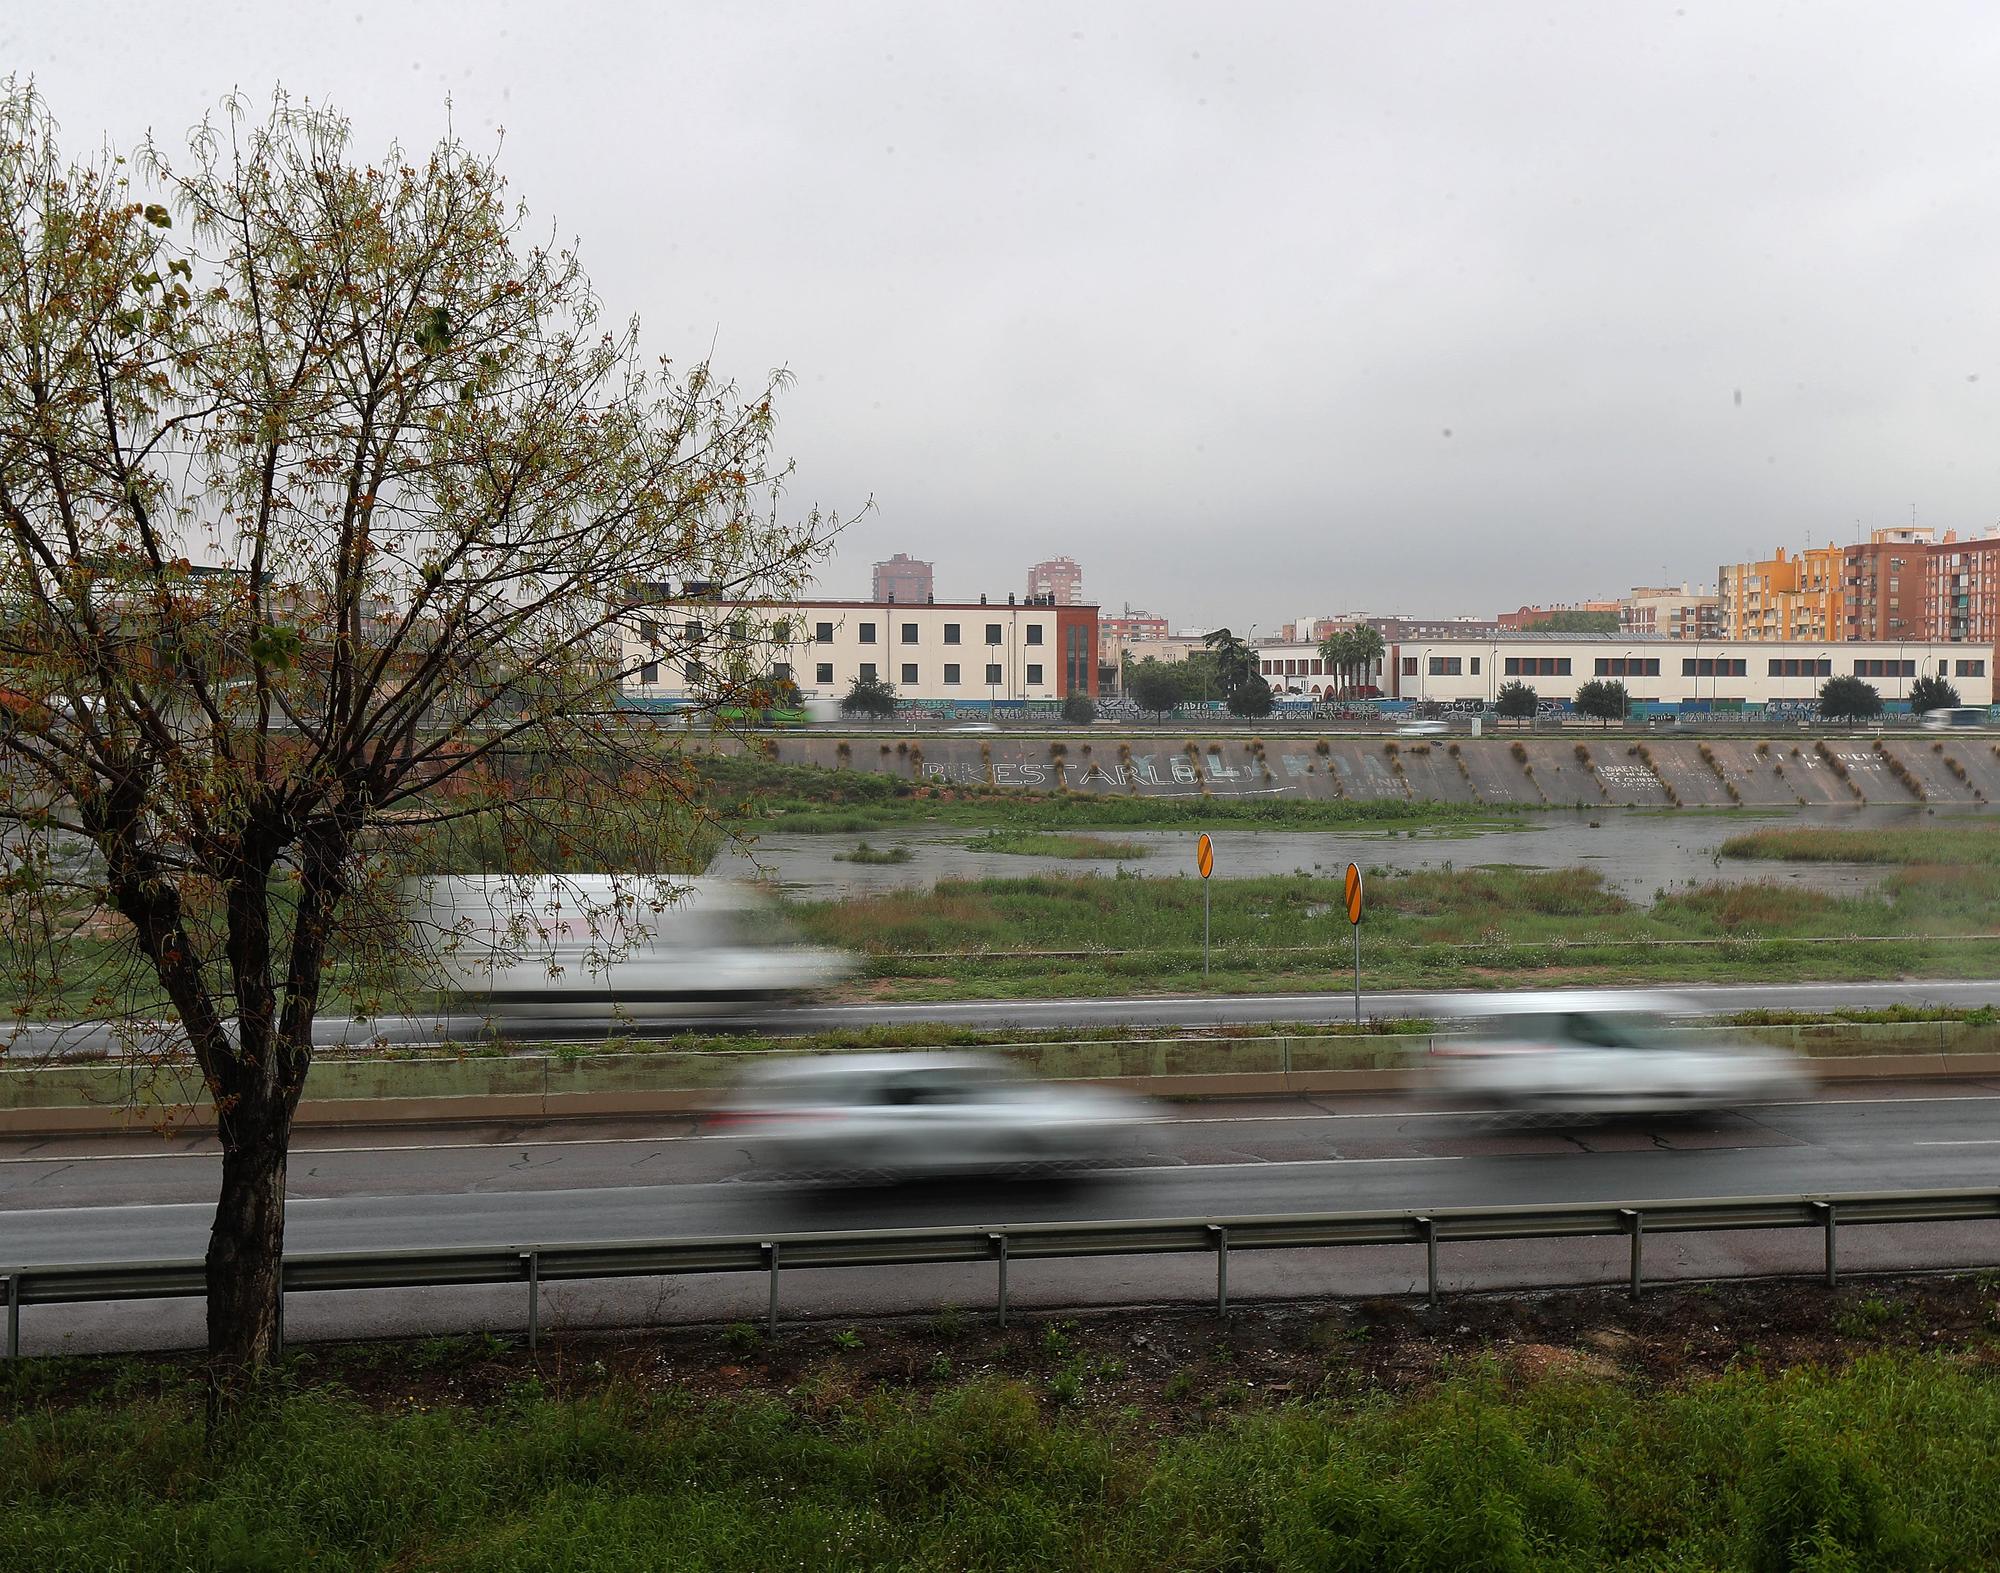 El nuevo cauce del Río Turia lleno, de nuevo, por el temporal de lluvias en València